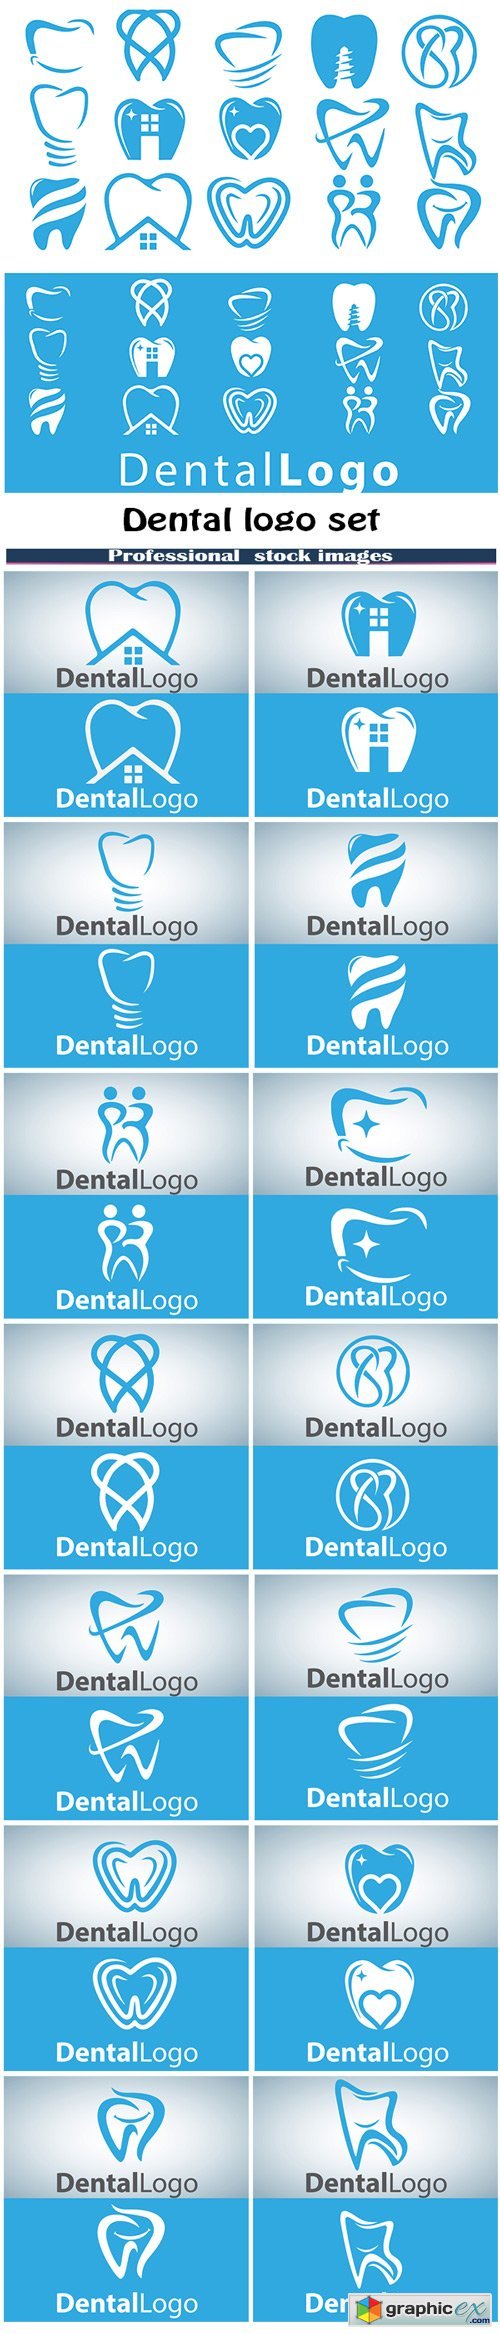 Dental logo set